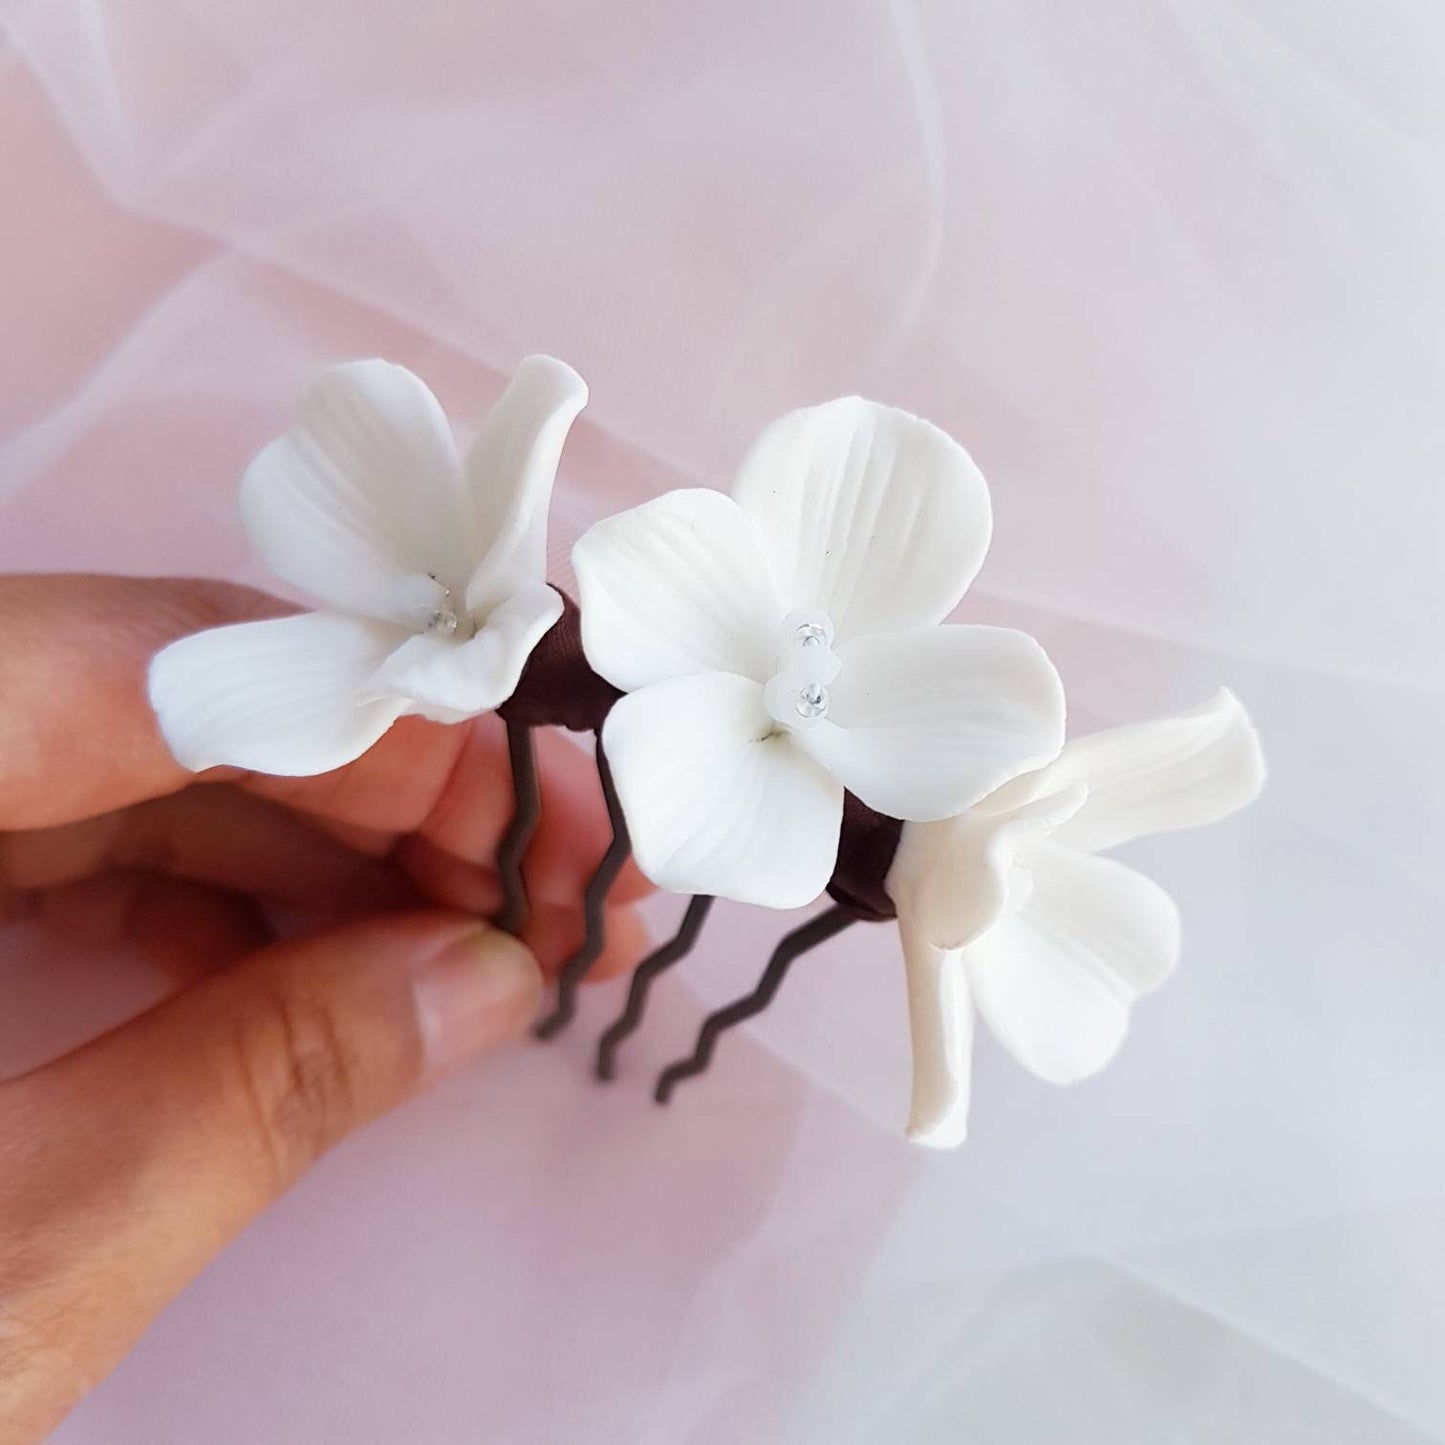 TROIS FLEURS Haircomb dainty white Flowers Hairpins Bridal Wedding Hair Pins Headpiece Accessories porcelain combs pin ceramic handmade